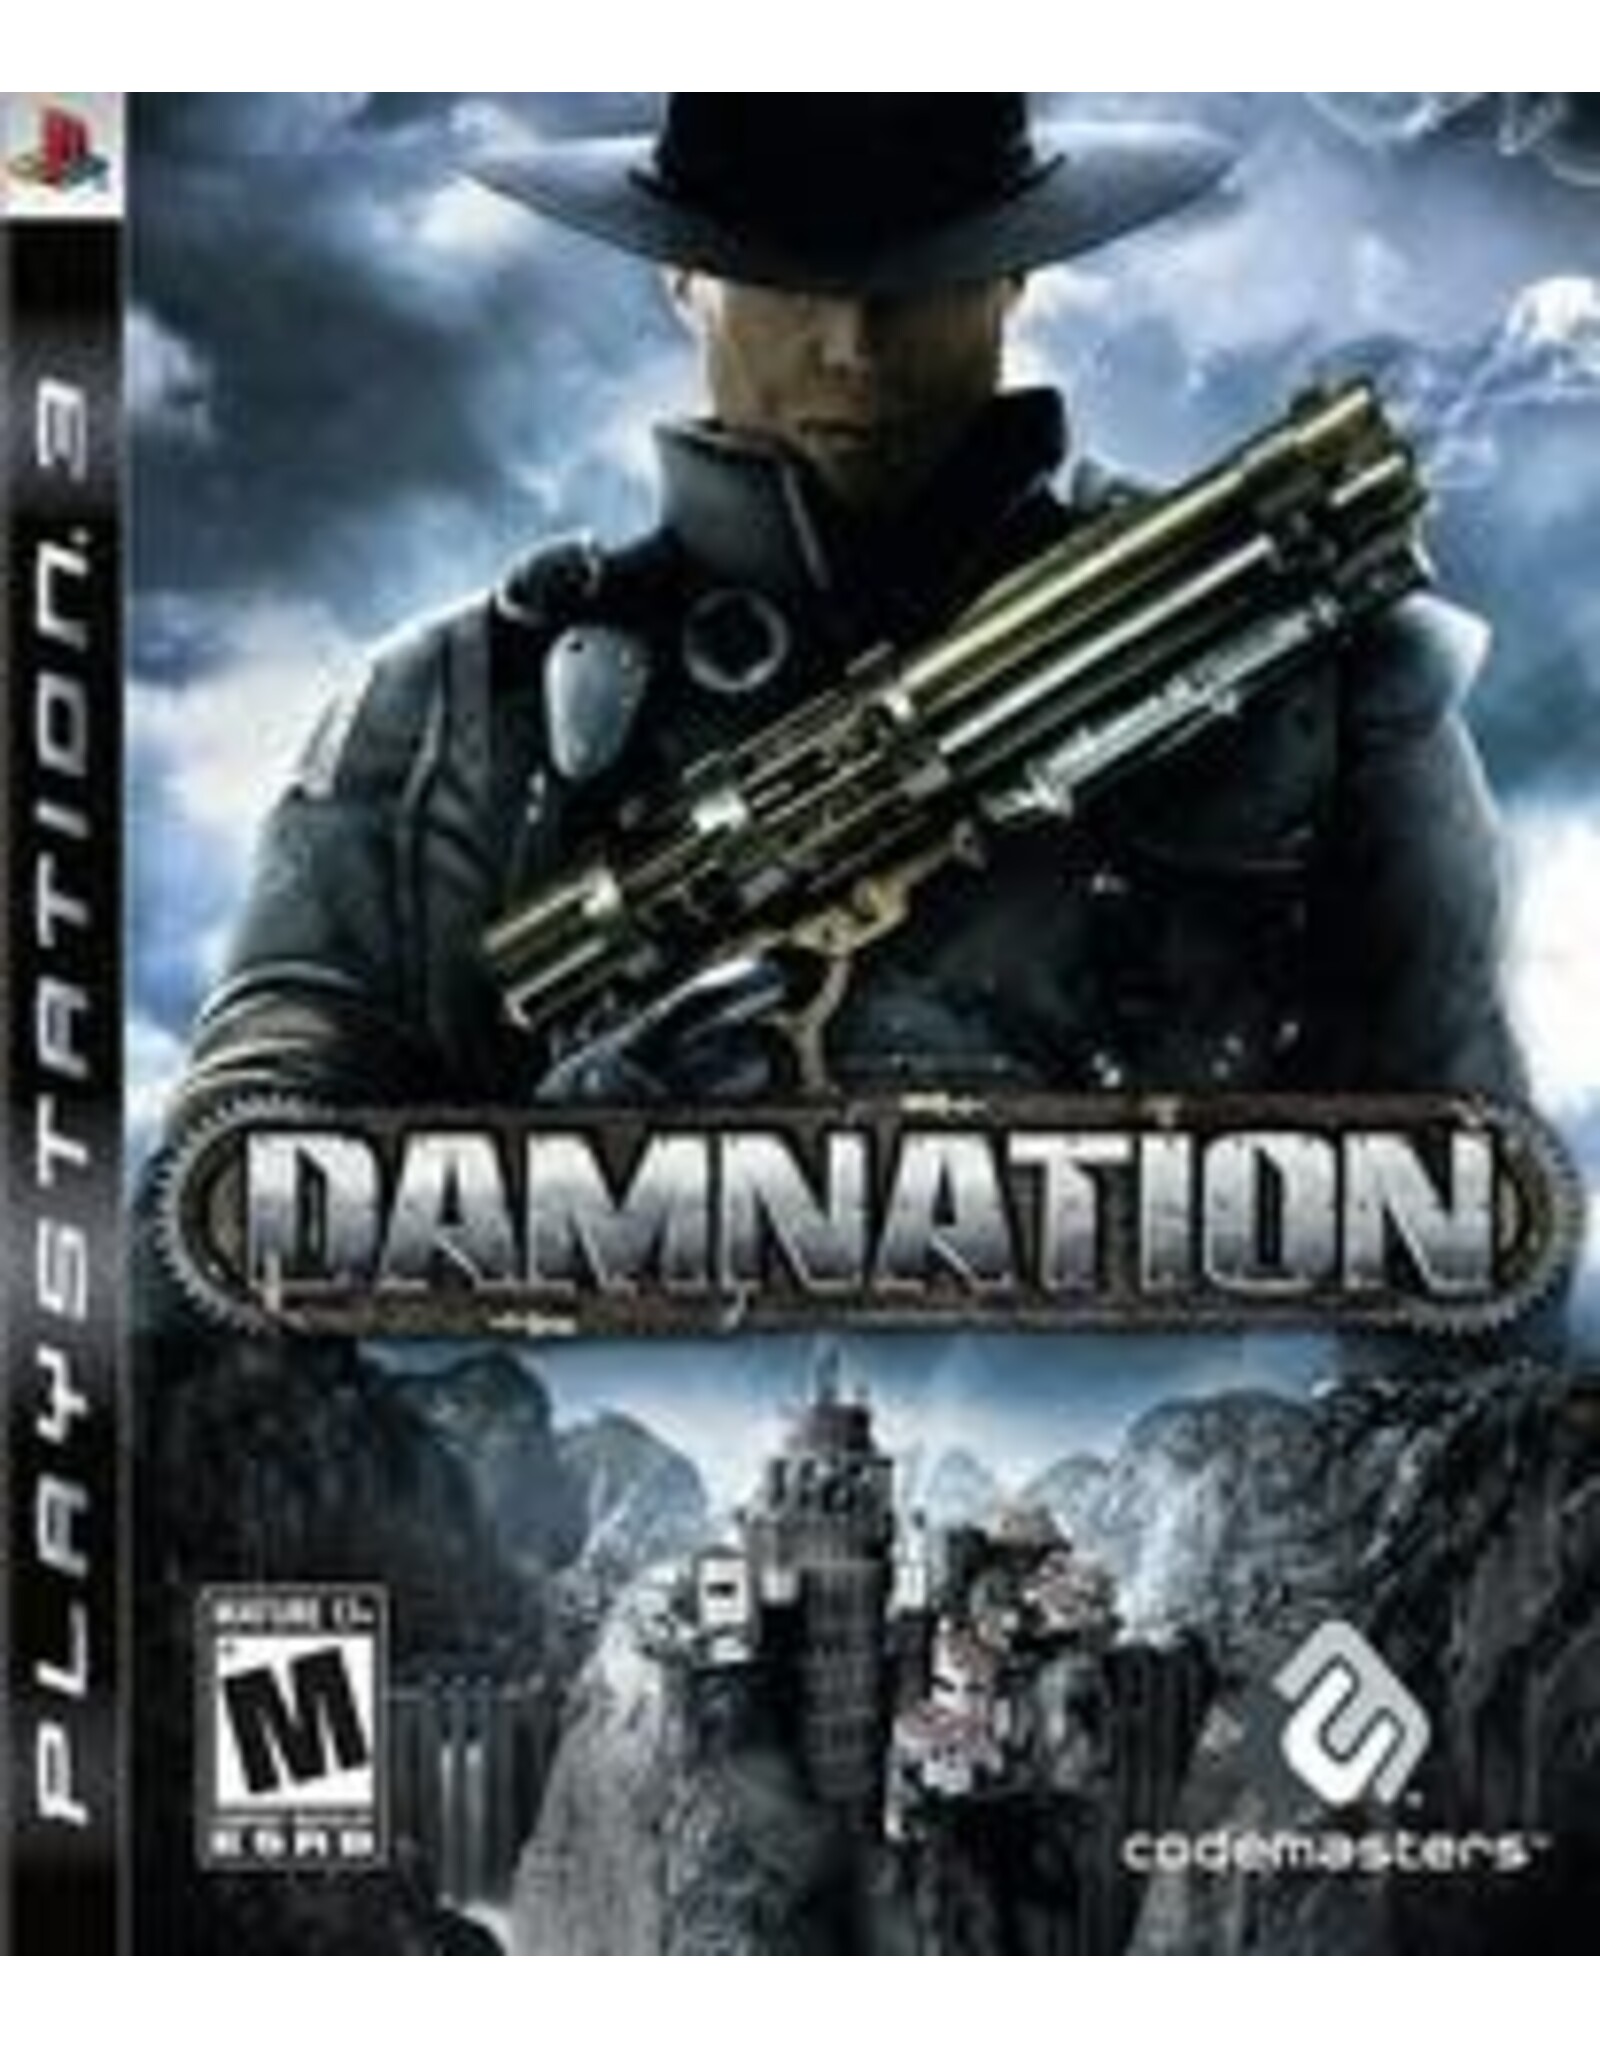 Playstation 3 Damnation (CiB)